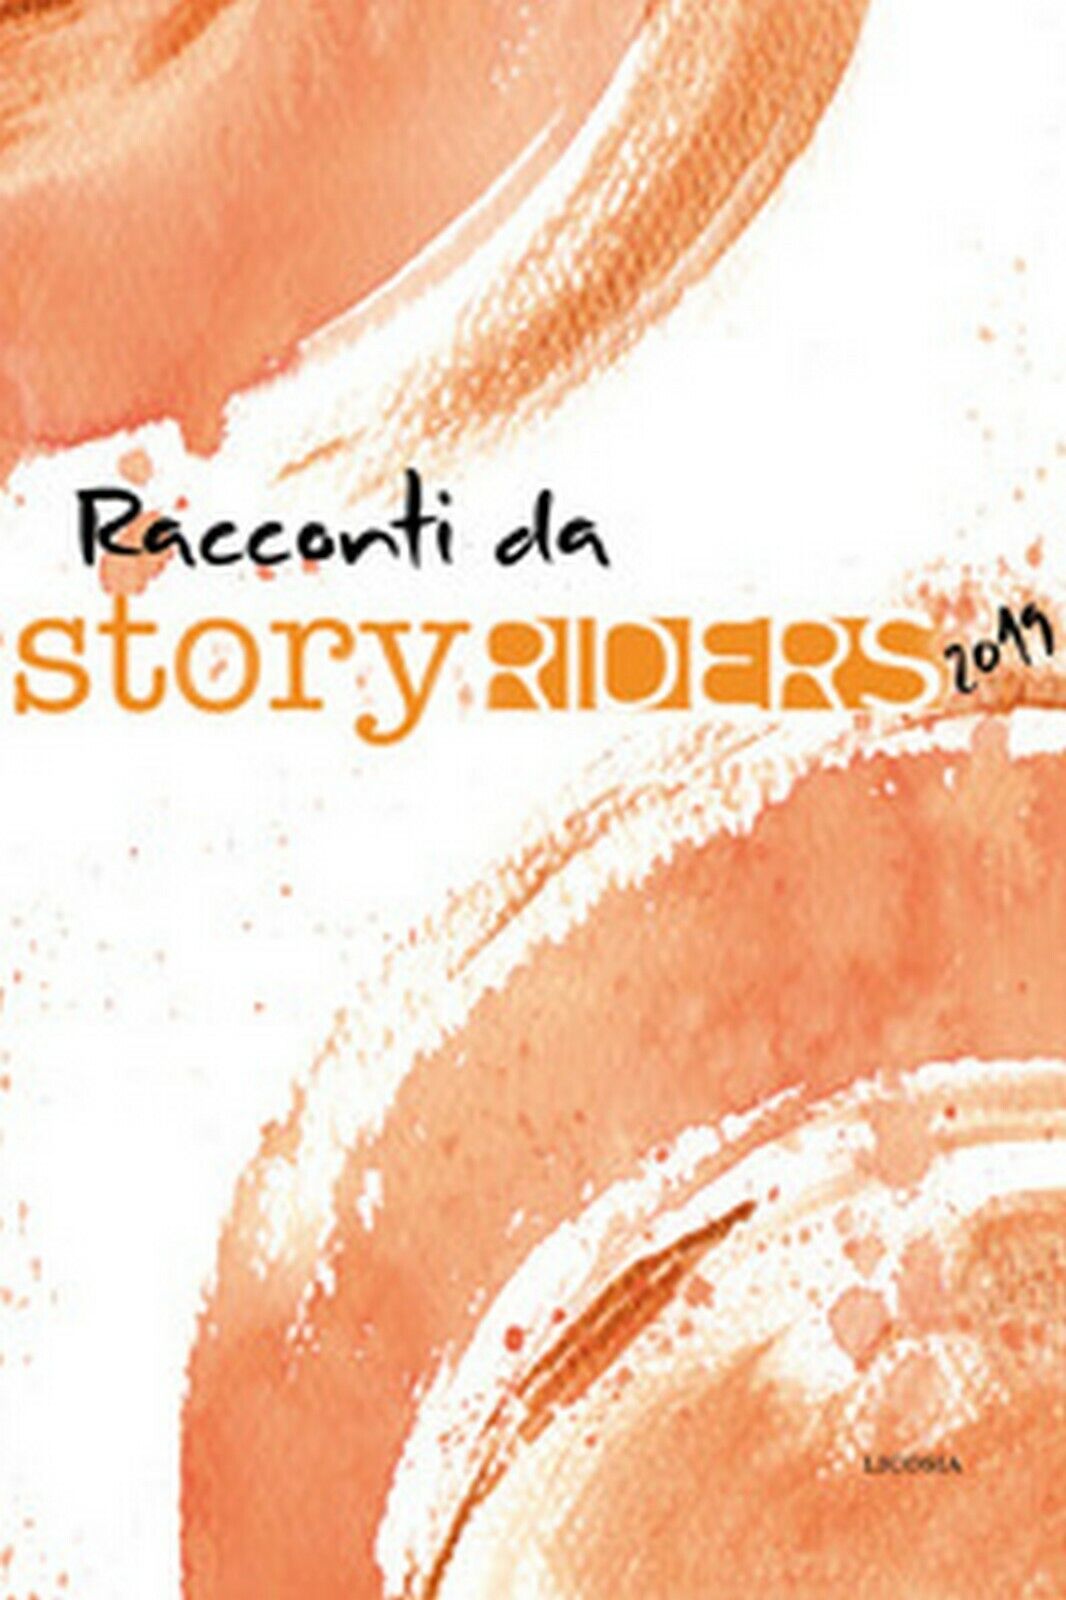 Story riders 2019  di G. Guida, A. Riccio, R. Aragona,  2019,  Licosia